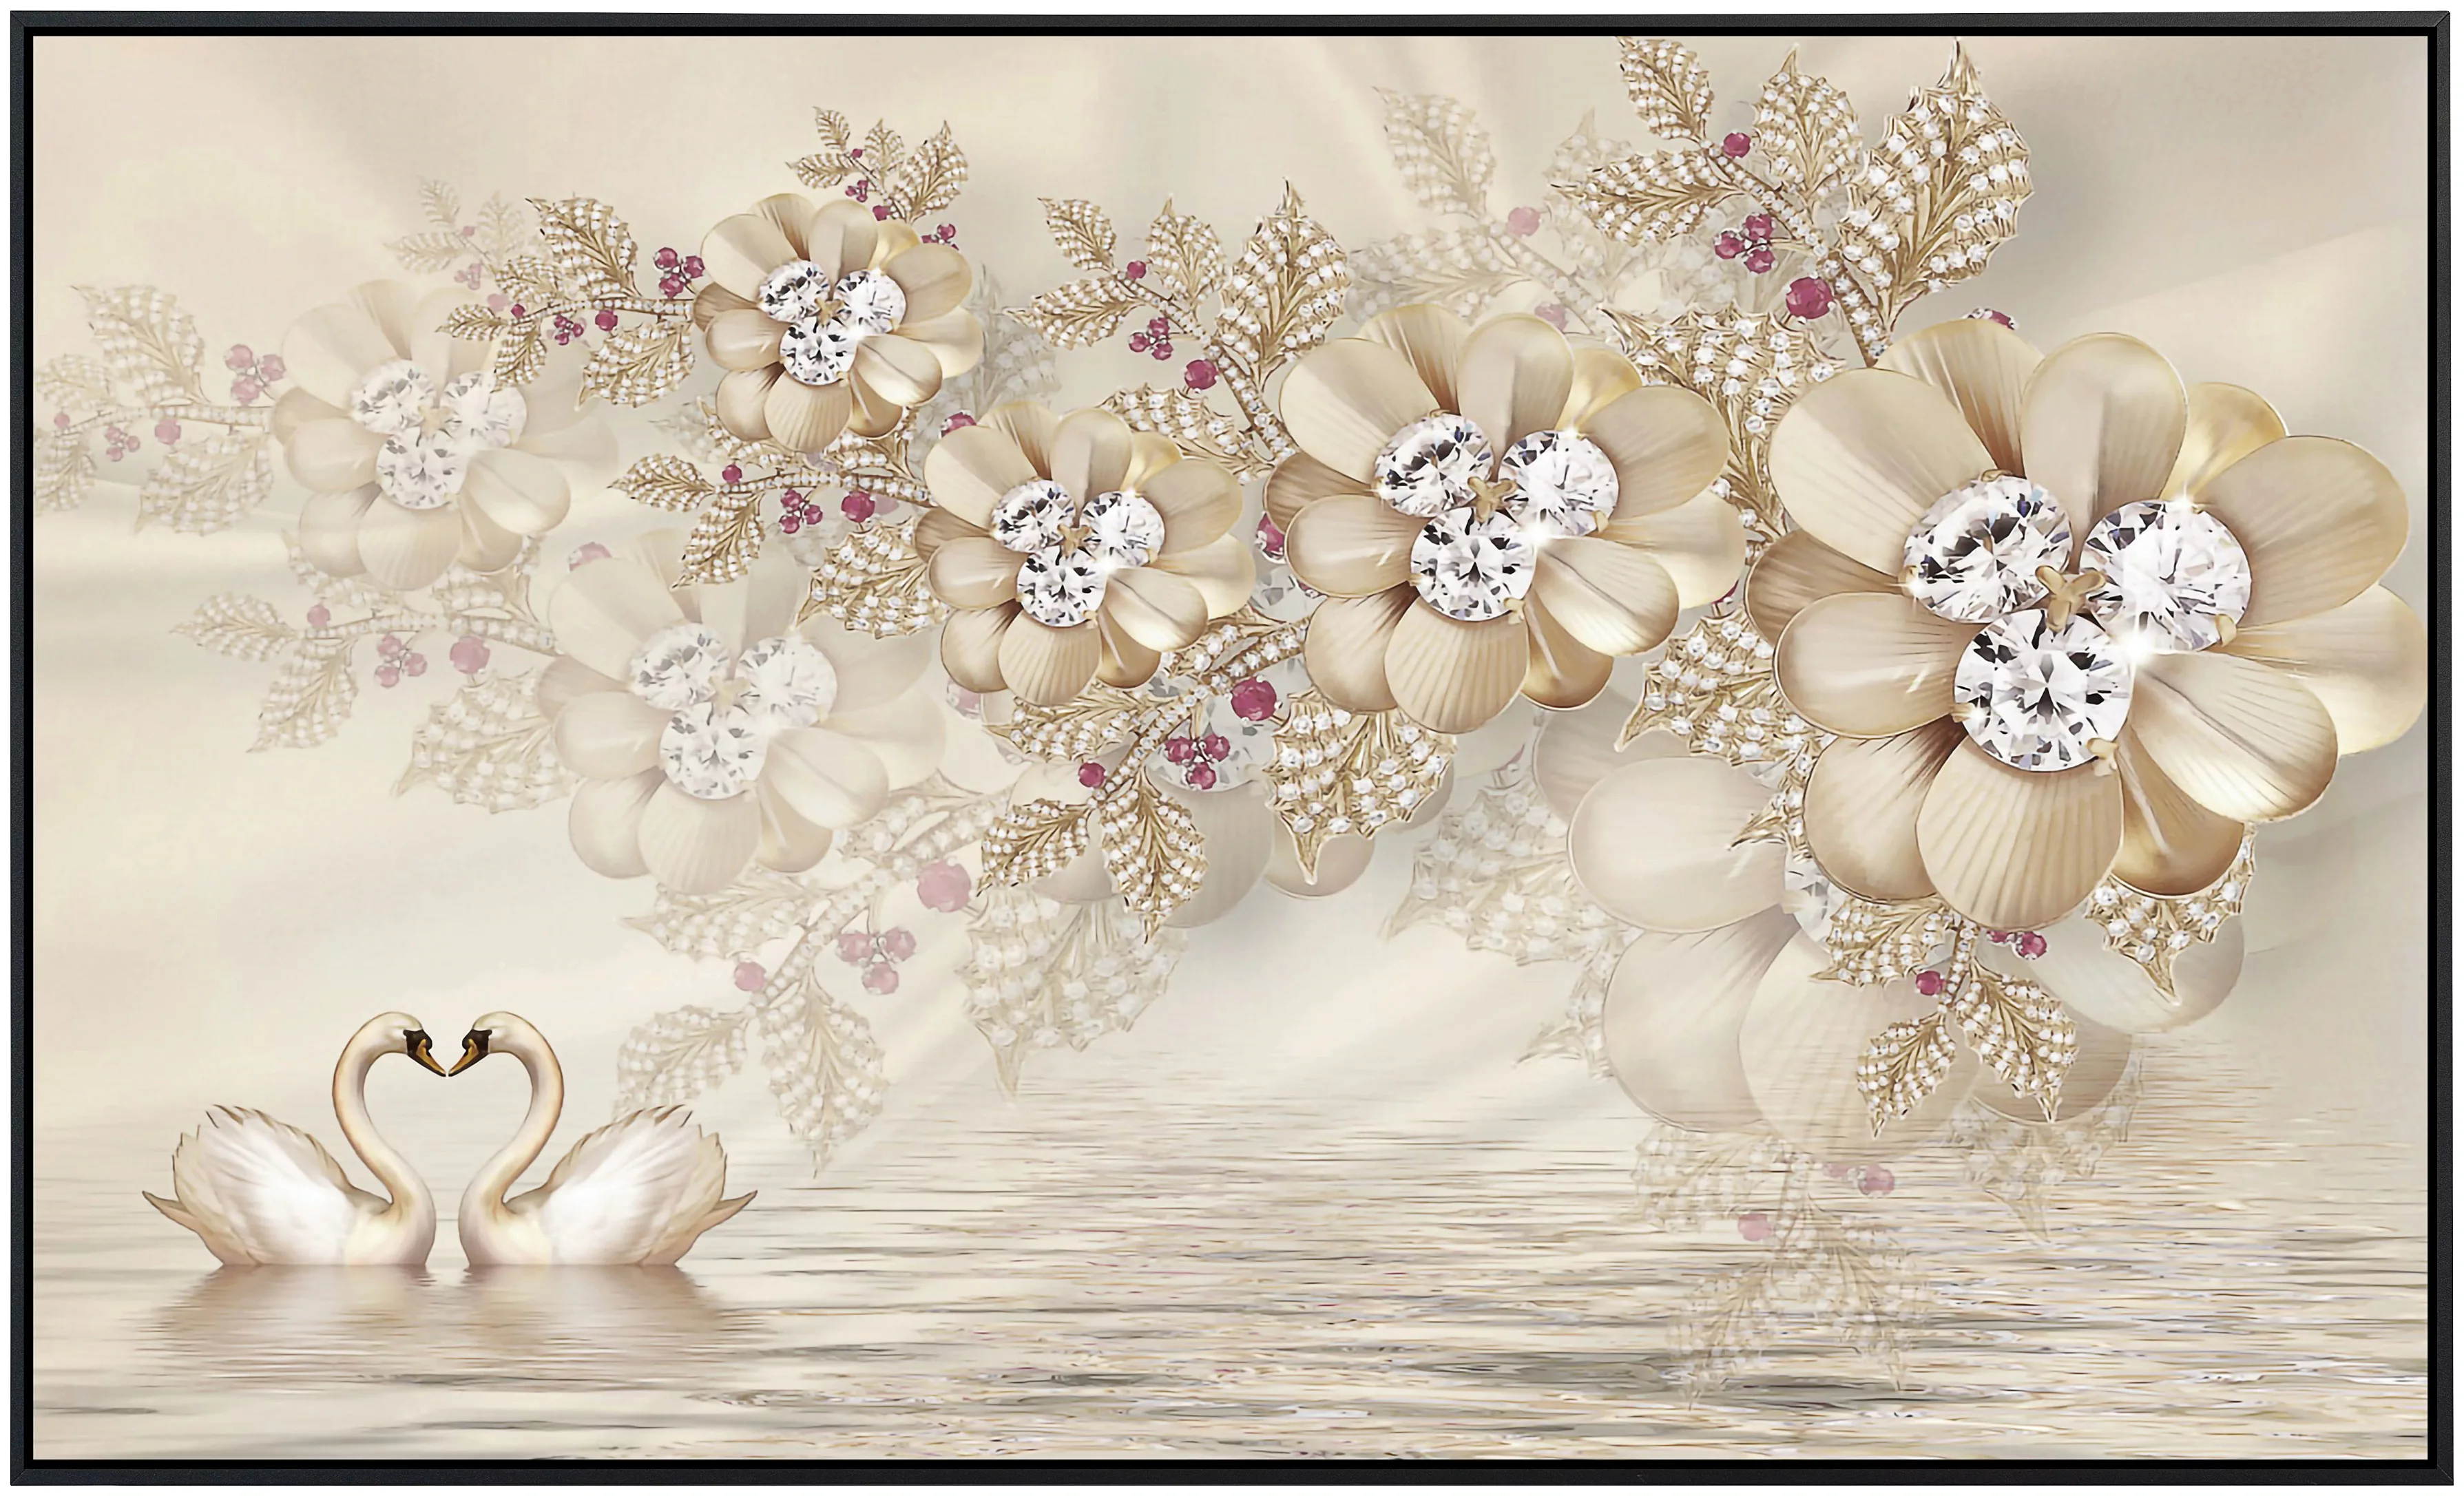 Papermoon Infrarotheizung »Muster mit Blumen«, sehr angenehme Strahlungswär günstig online kaufen